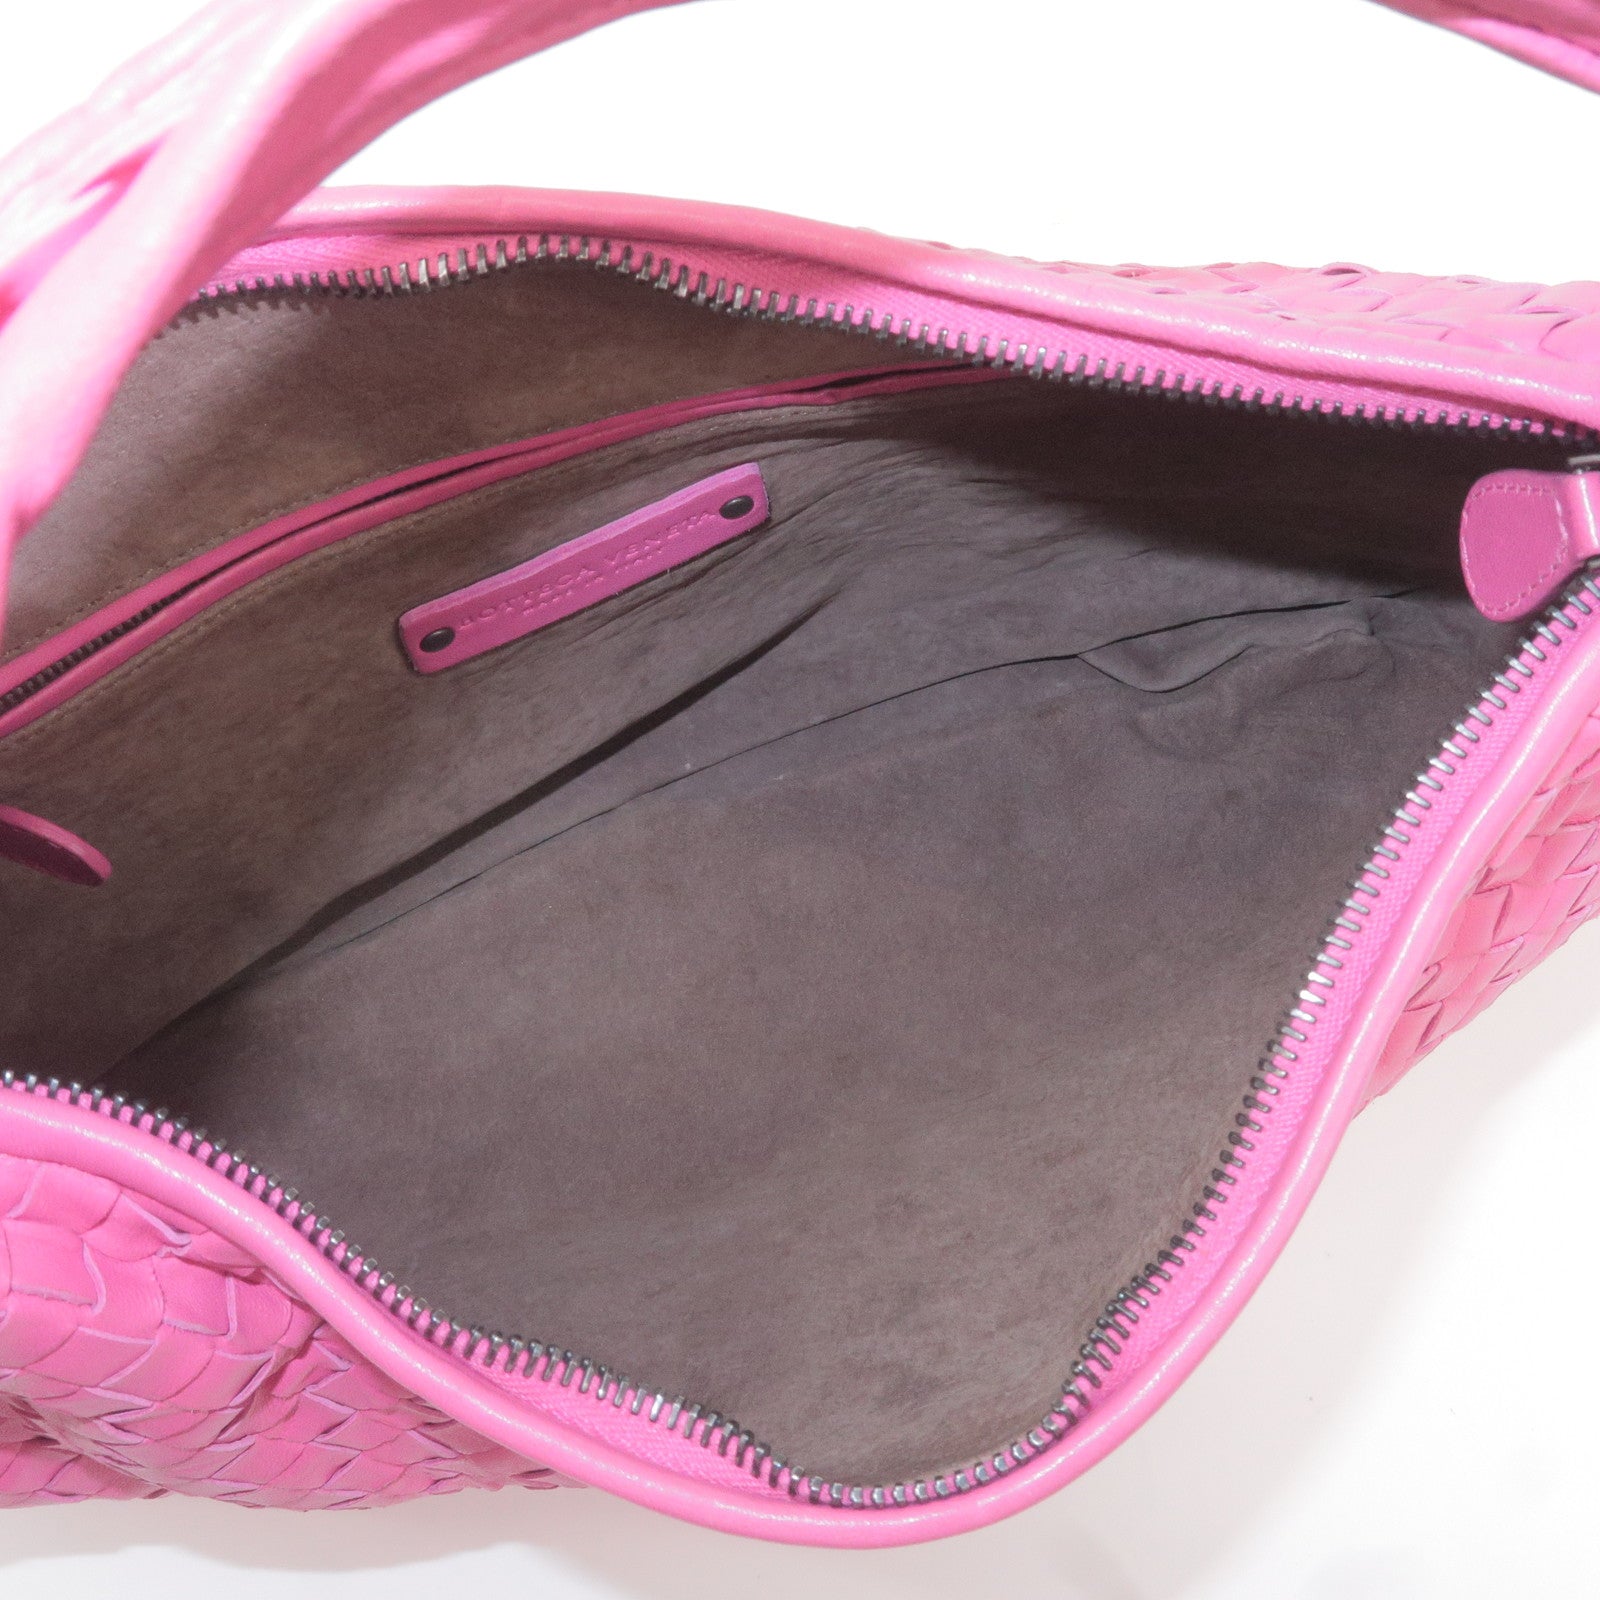 BOTTEGA-VENETA-Intrecciato-Hobo-Leather-Shoulder-Bag-Pink-1156548